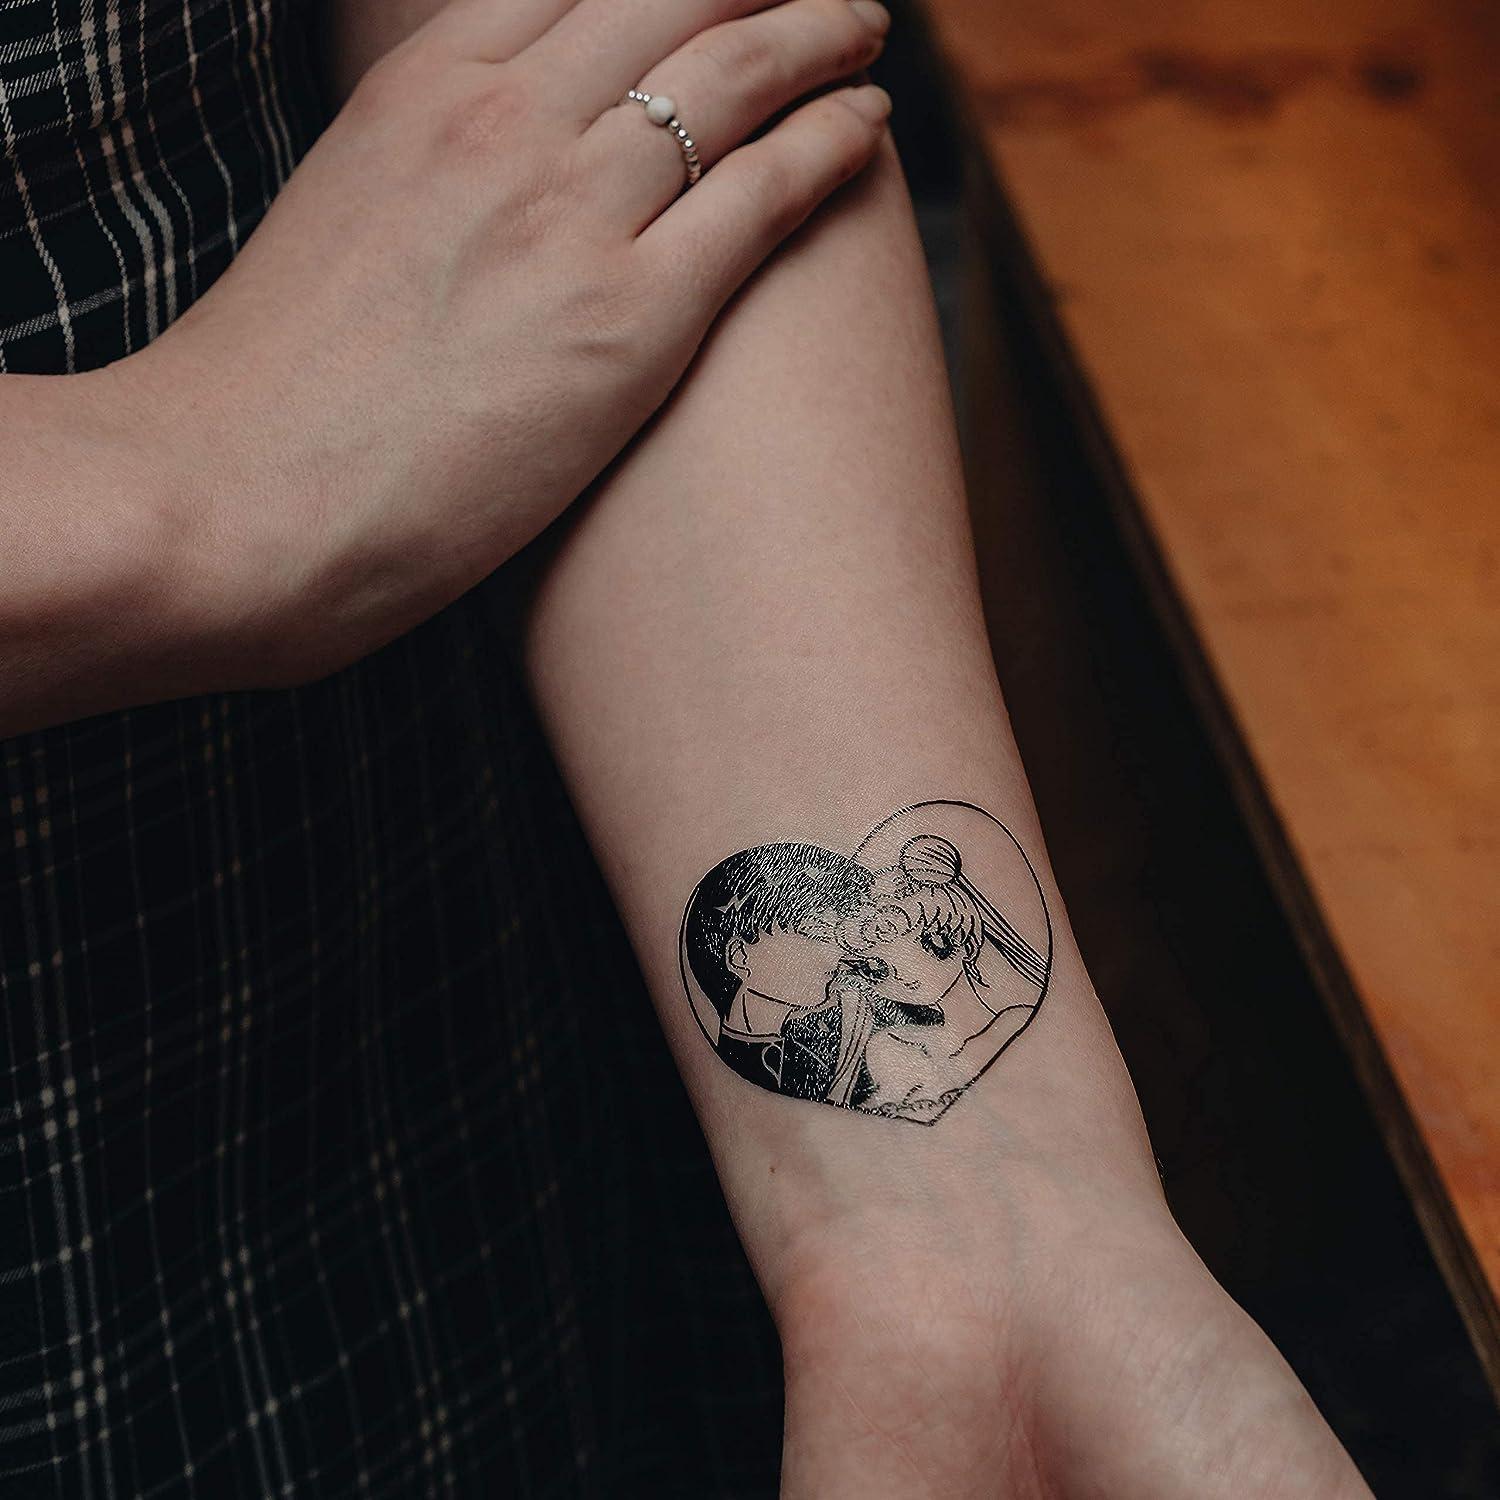 Minimalist My Kingdom For A Kiss Upon Her Shoulder Tattoo Idea